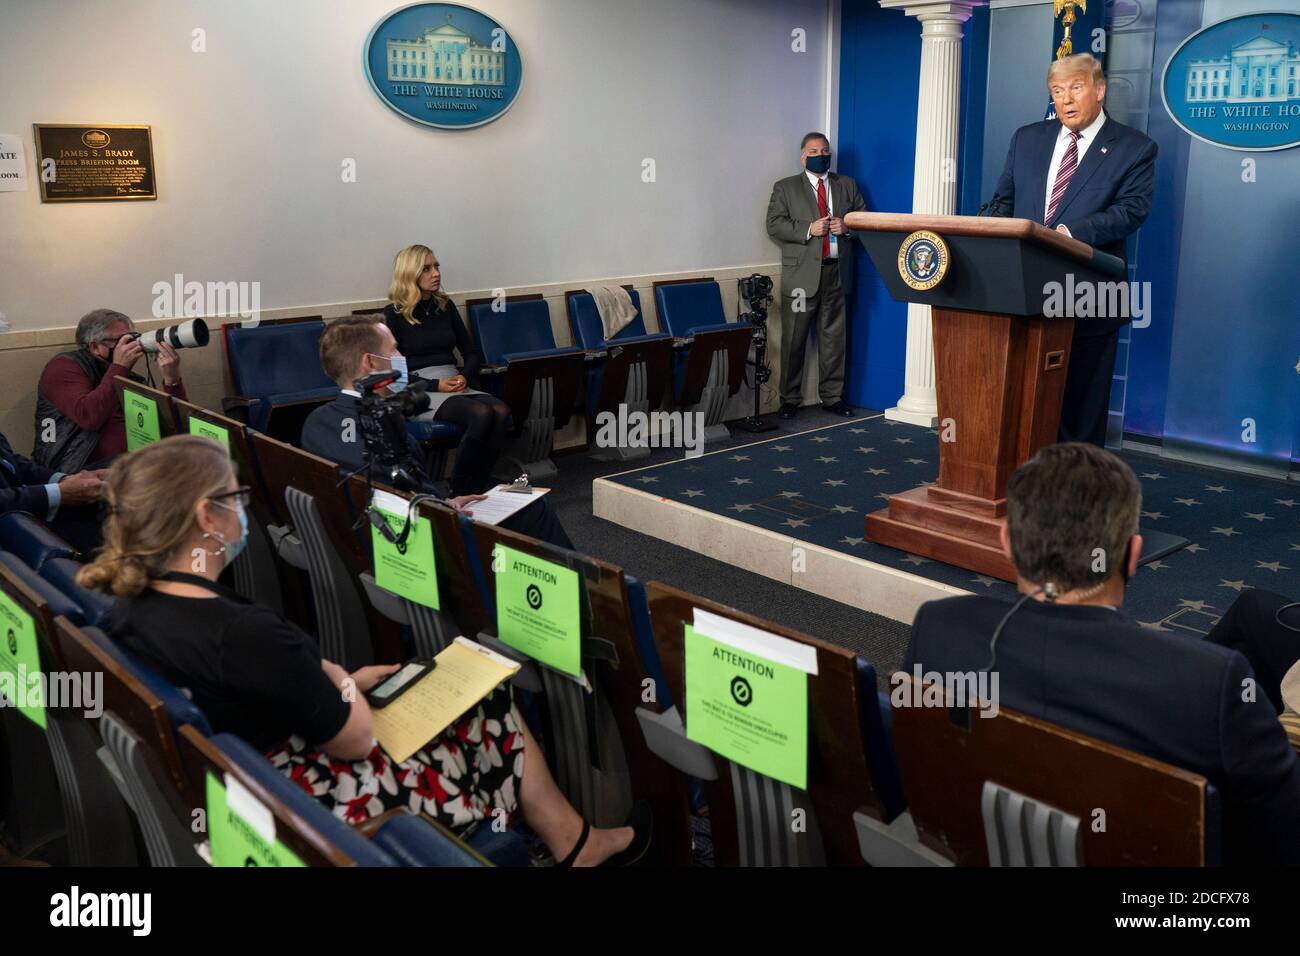 WASHINGTON DC, USA - 05 novembre 2020 - il presidente Donald J. Trump si rivolge ai giornalisti durante una conferenza stampa giovedì 5 novembre 2020, presso il James S. Foto Stock